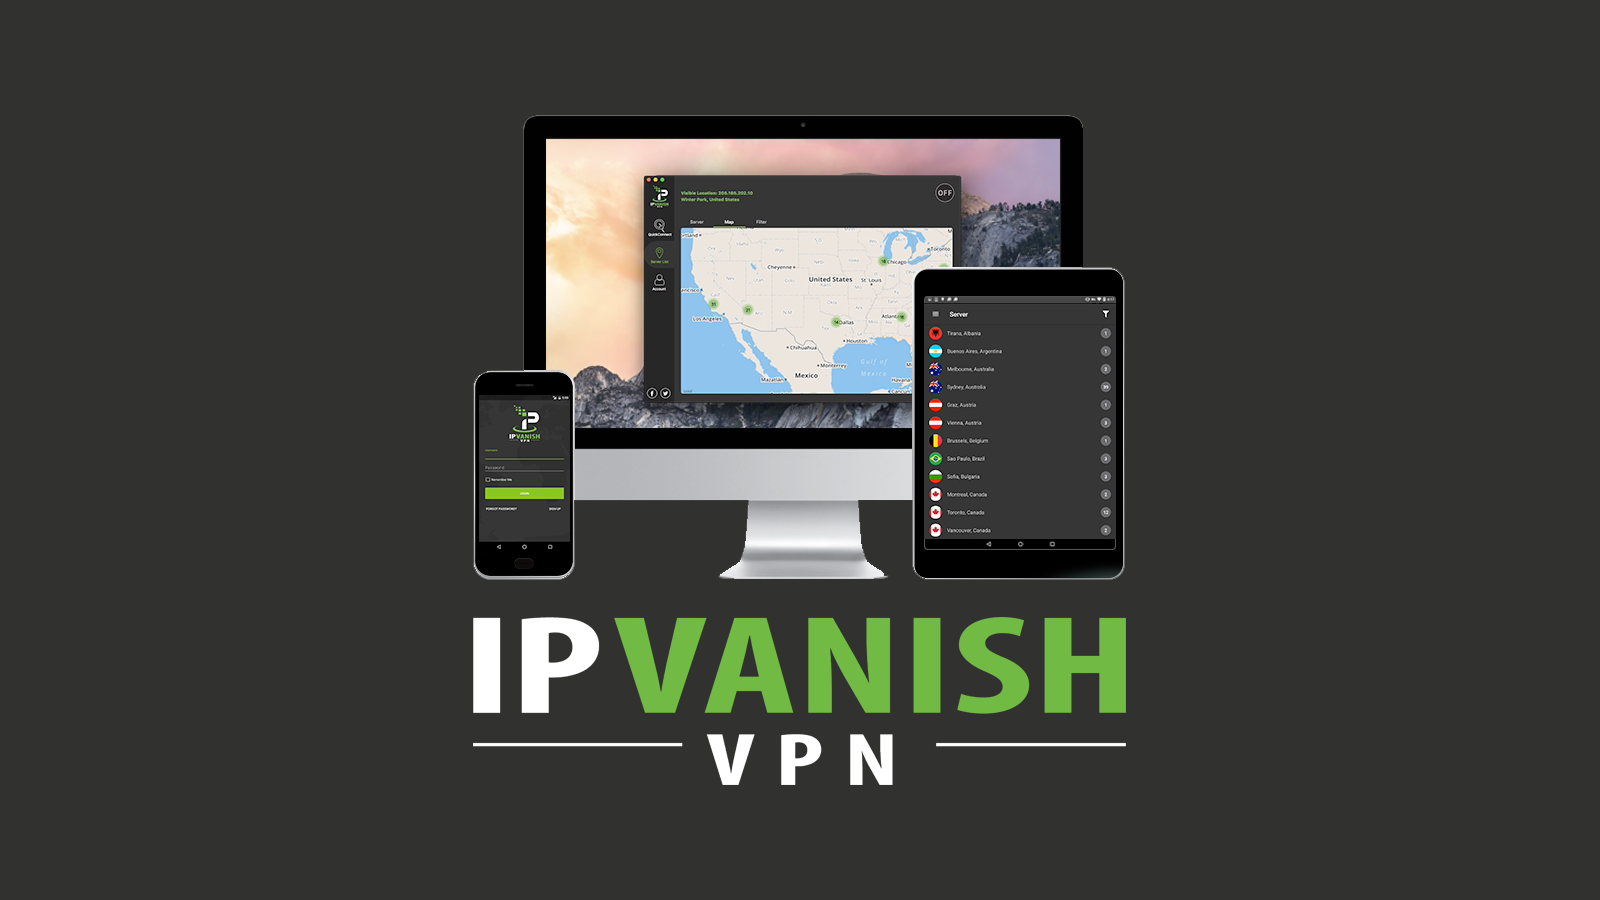 ipvanish for mac review